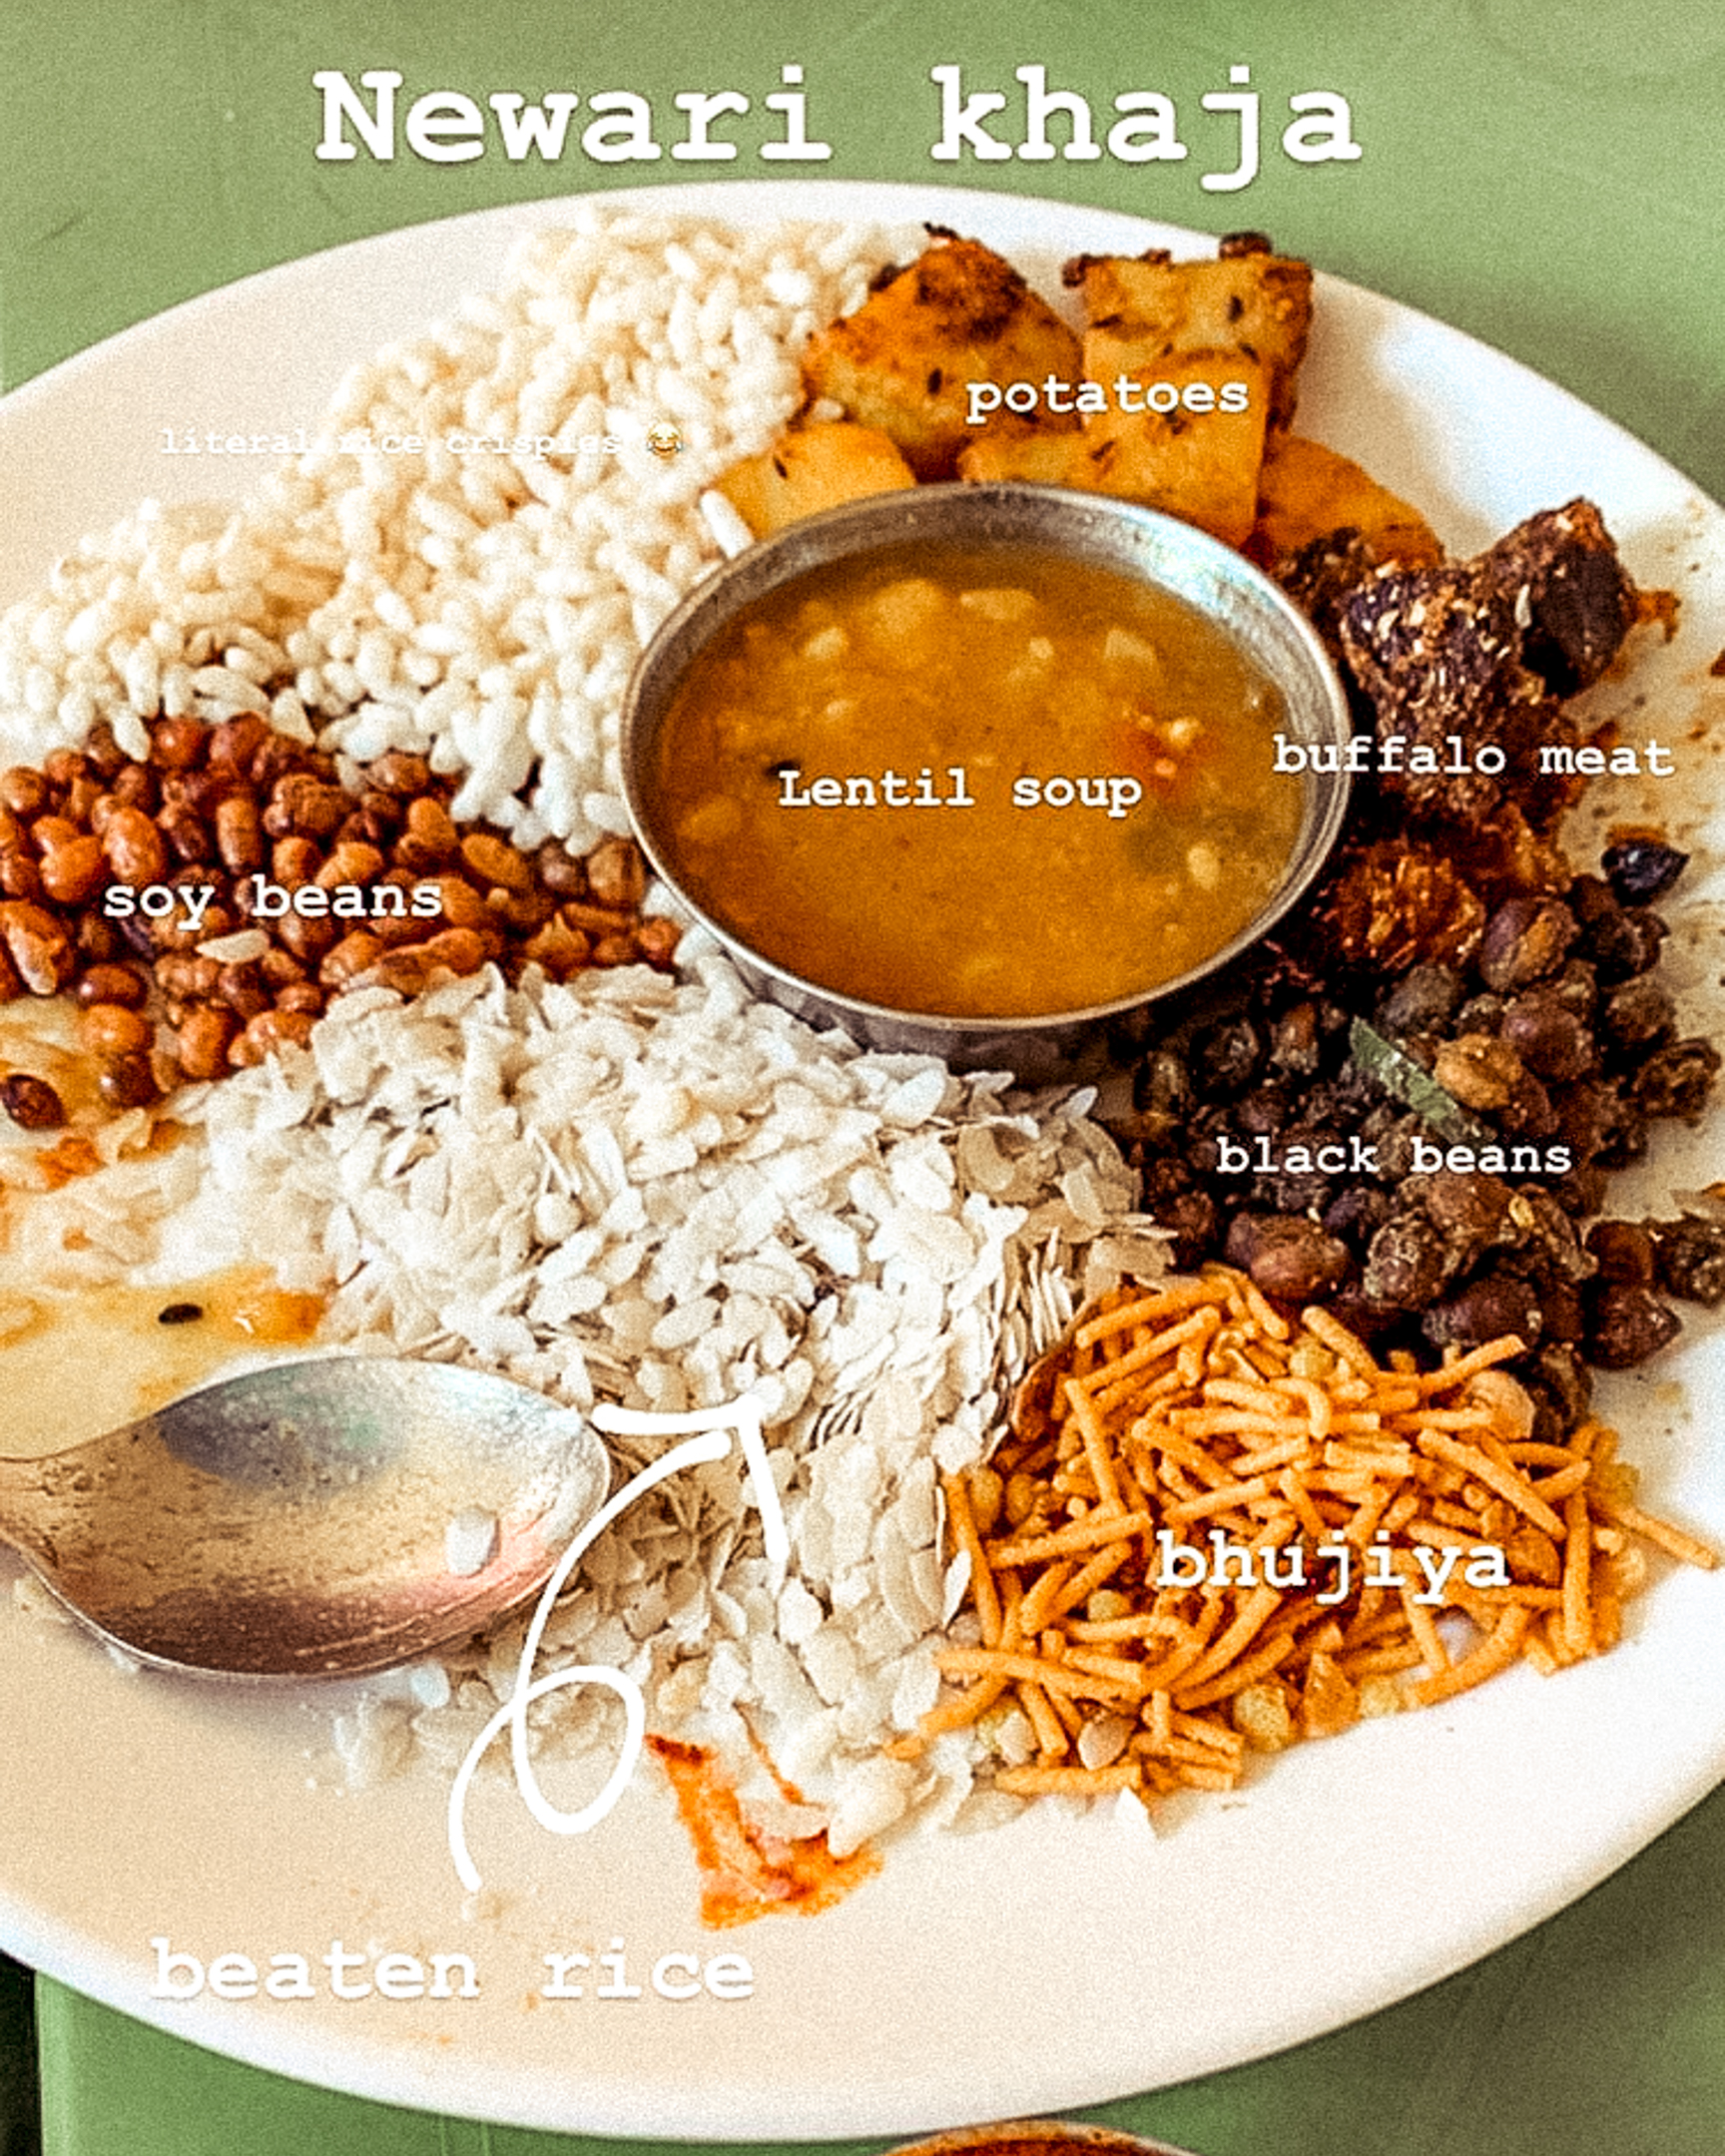 Nepali Food Newari khaja